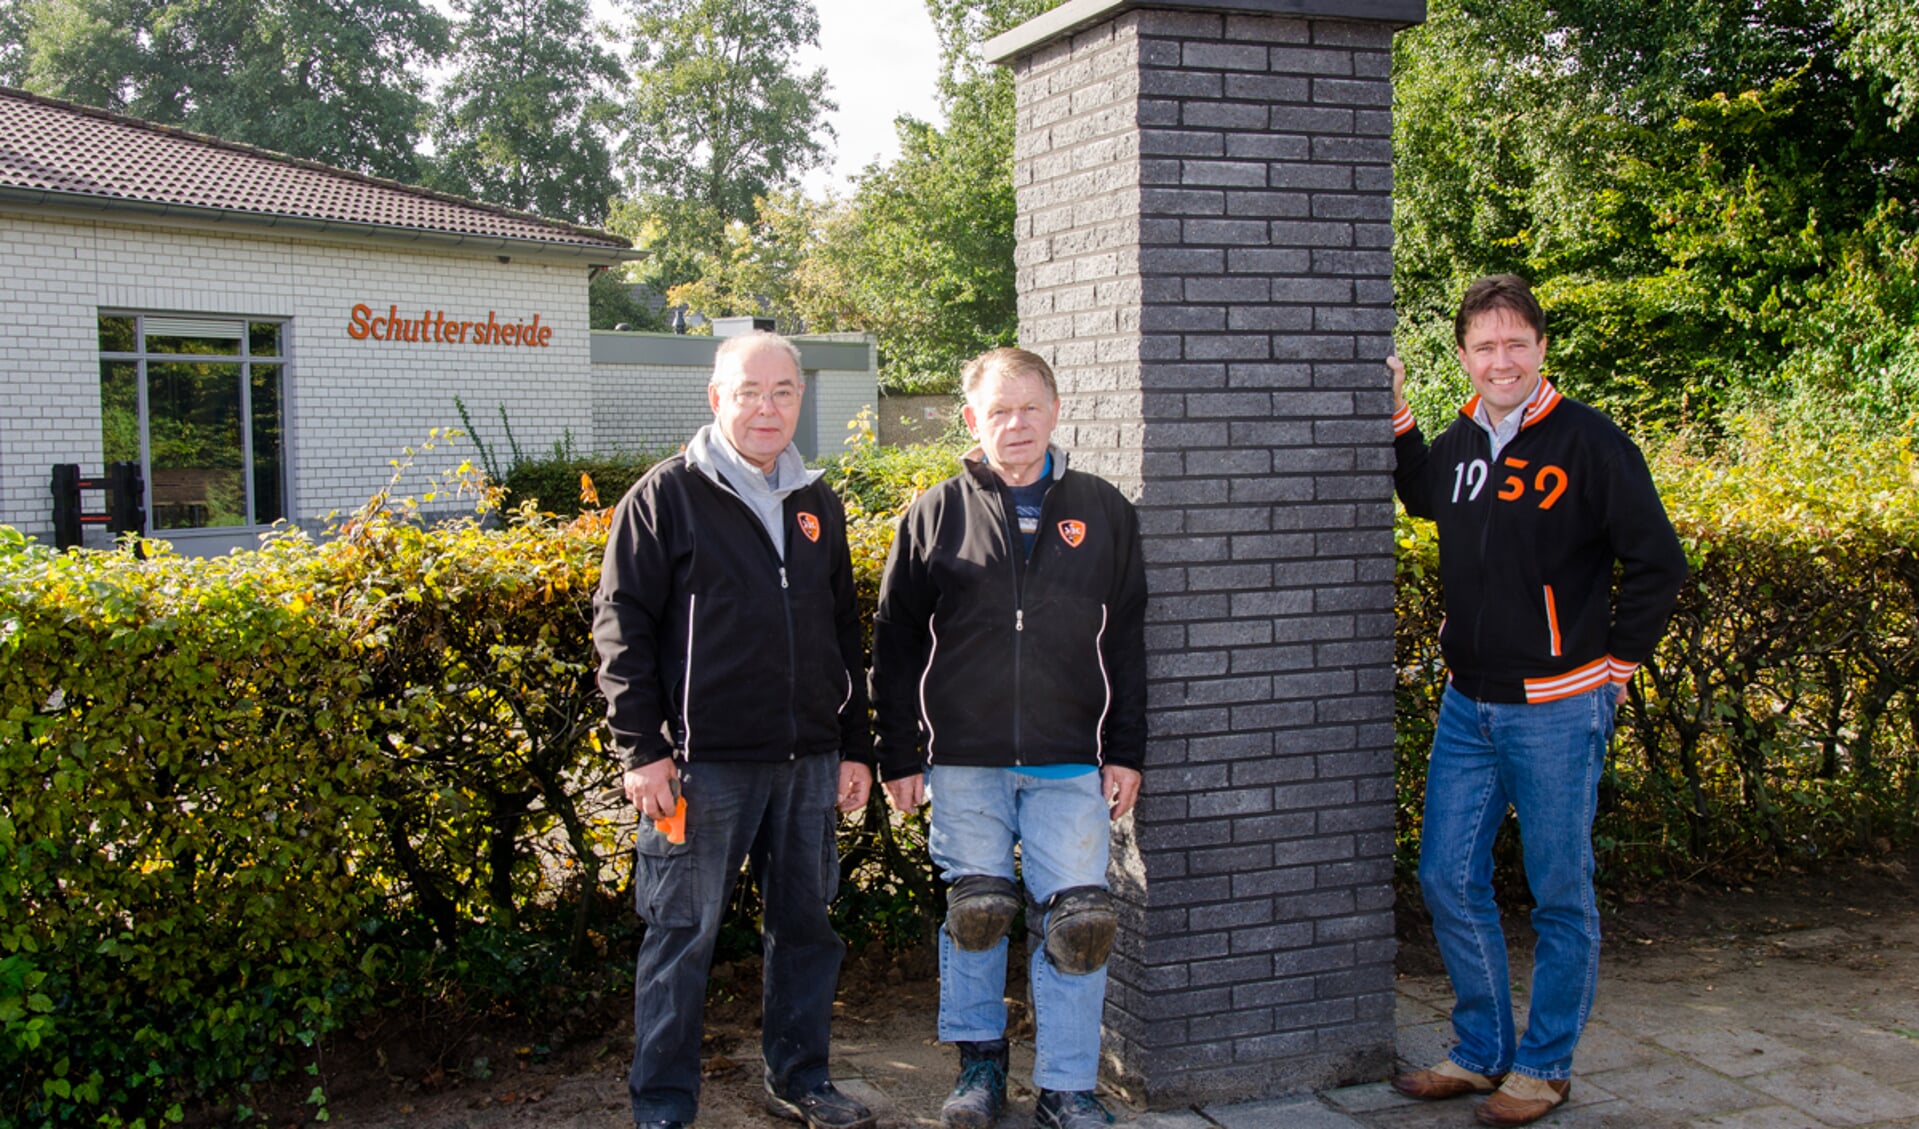 Vlnr: Ad Versantvoort, Doy van den Berg en Jasper van Zuuren bij de poort in aanbouw SBC (foto: Annemieke van Tinteren)